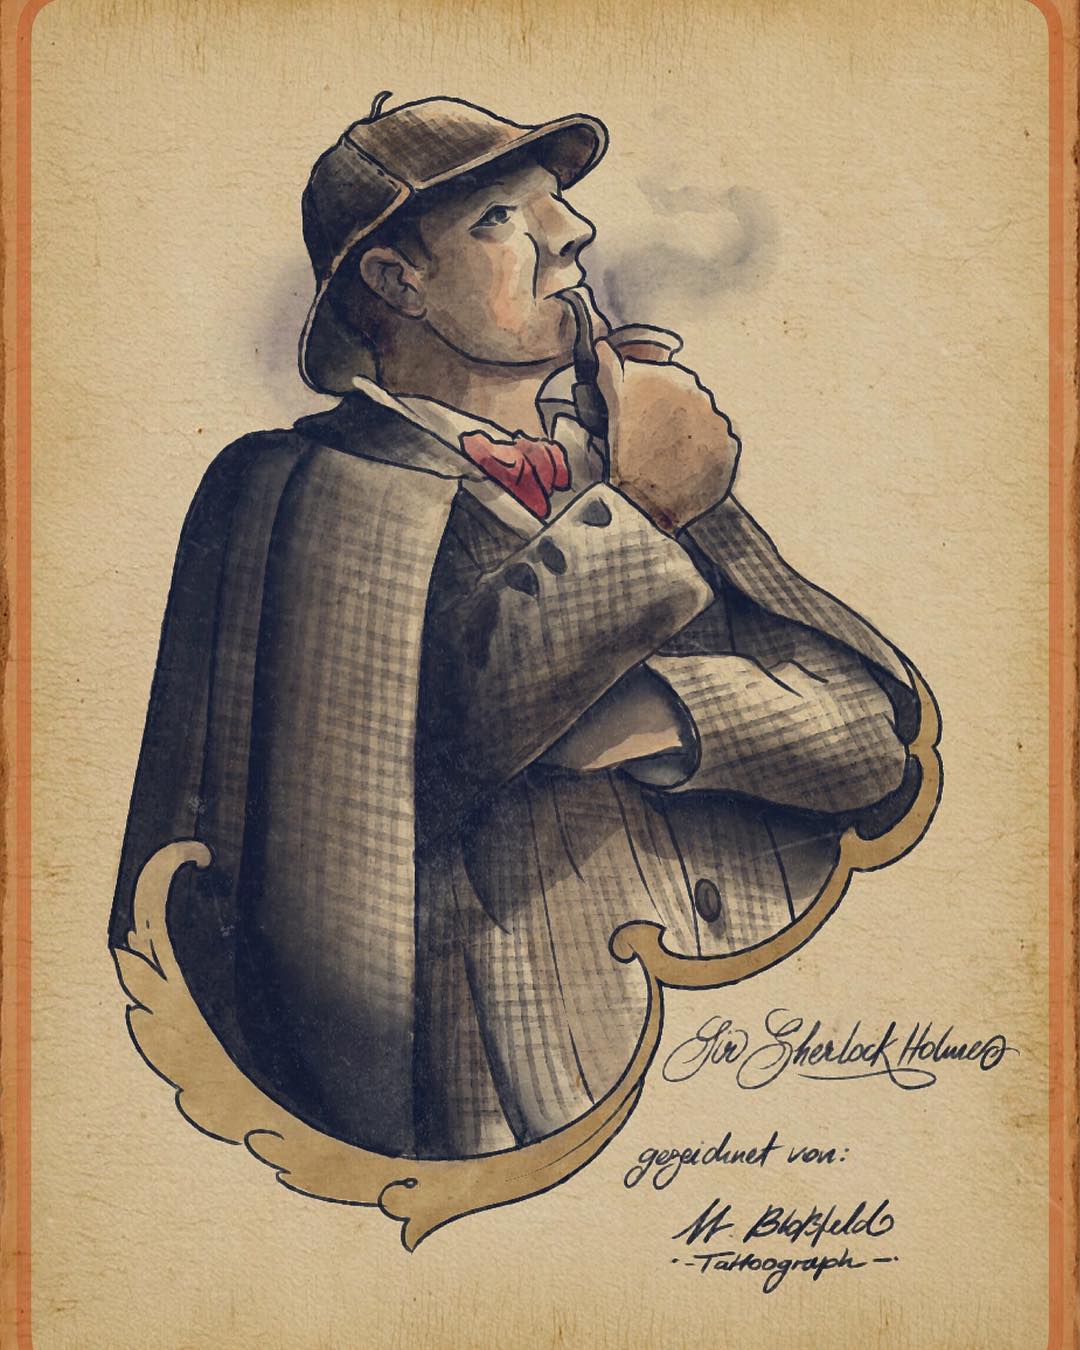 Tätowiervorlage "Sir Sherlock Holmes"
Bei Interesse an solch einer Tätowierung b